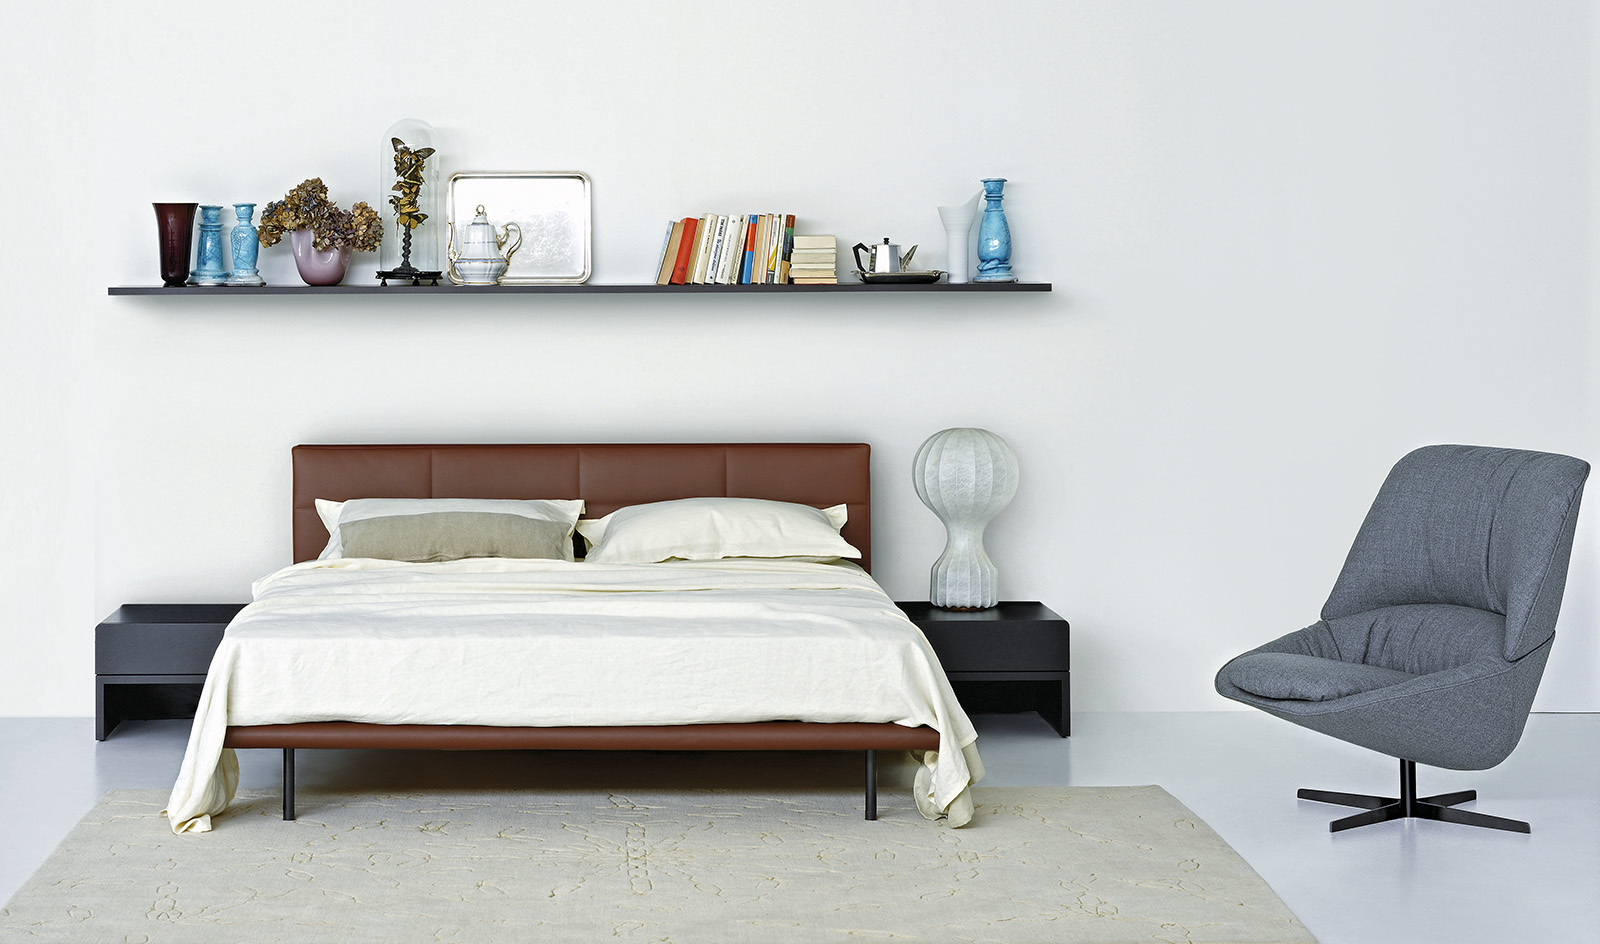 Arflex-Ledletto-cama-estofado-cabeceira-design-Cini-Boeri-removível- de solteiro-duplo-quarto-hospitalidade-projeto-customizável-luxo- madeinitaly-moderno-contemporâneo